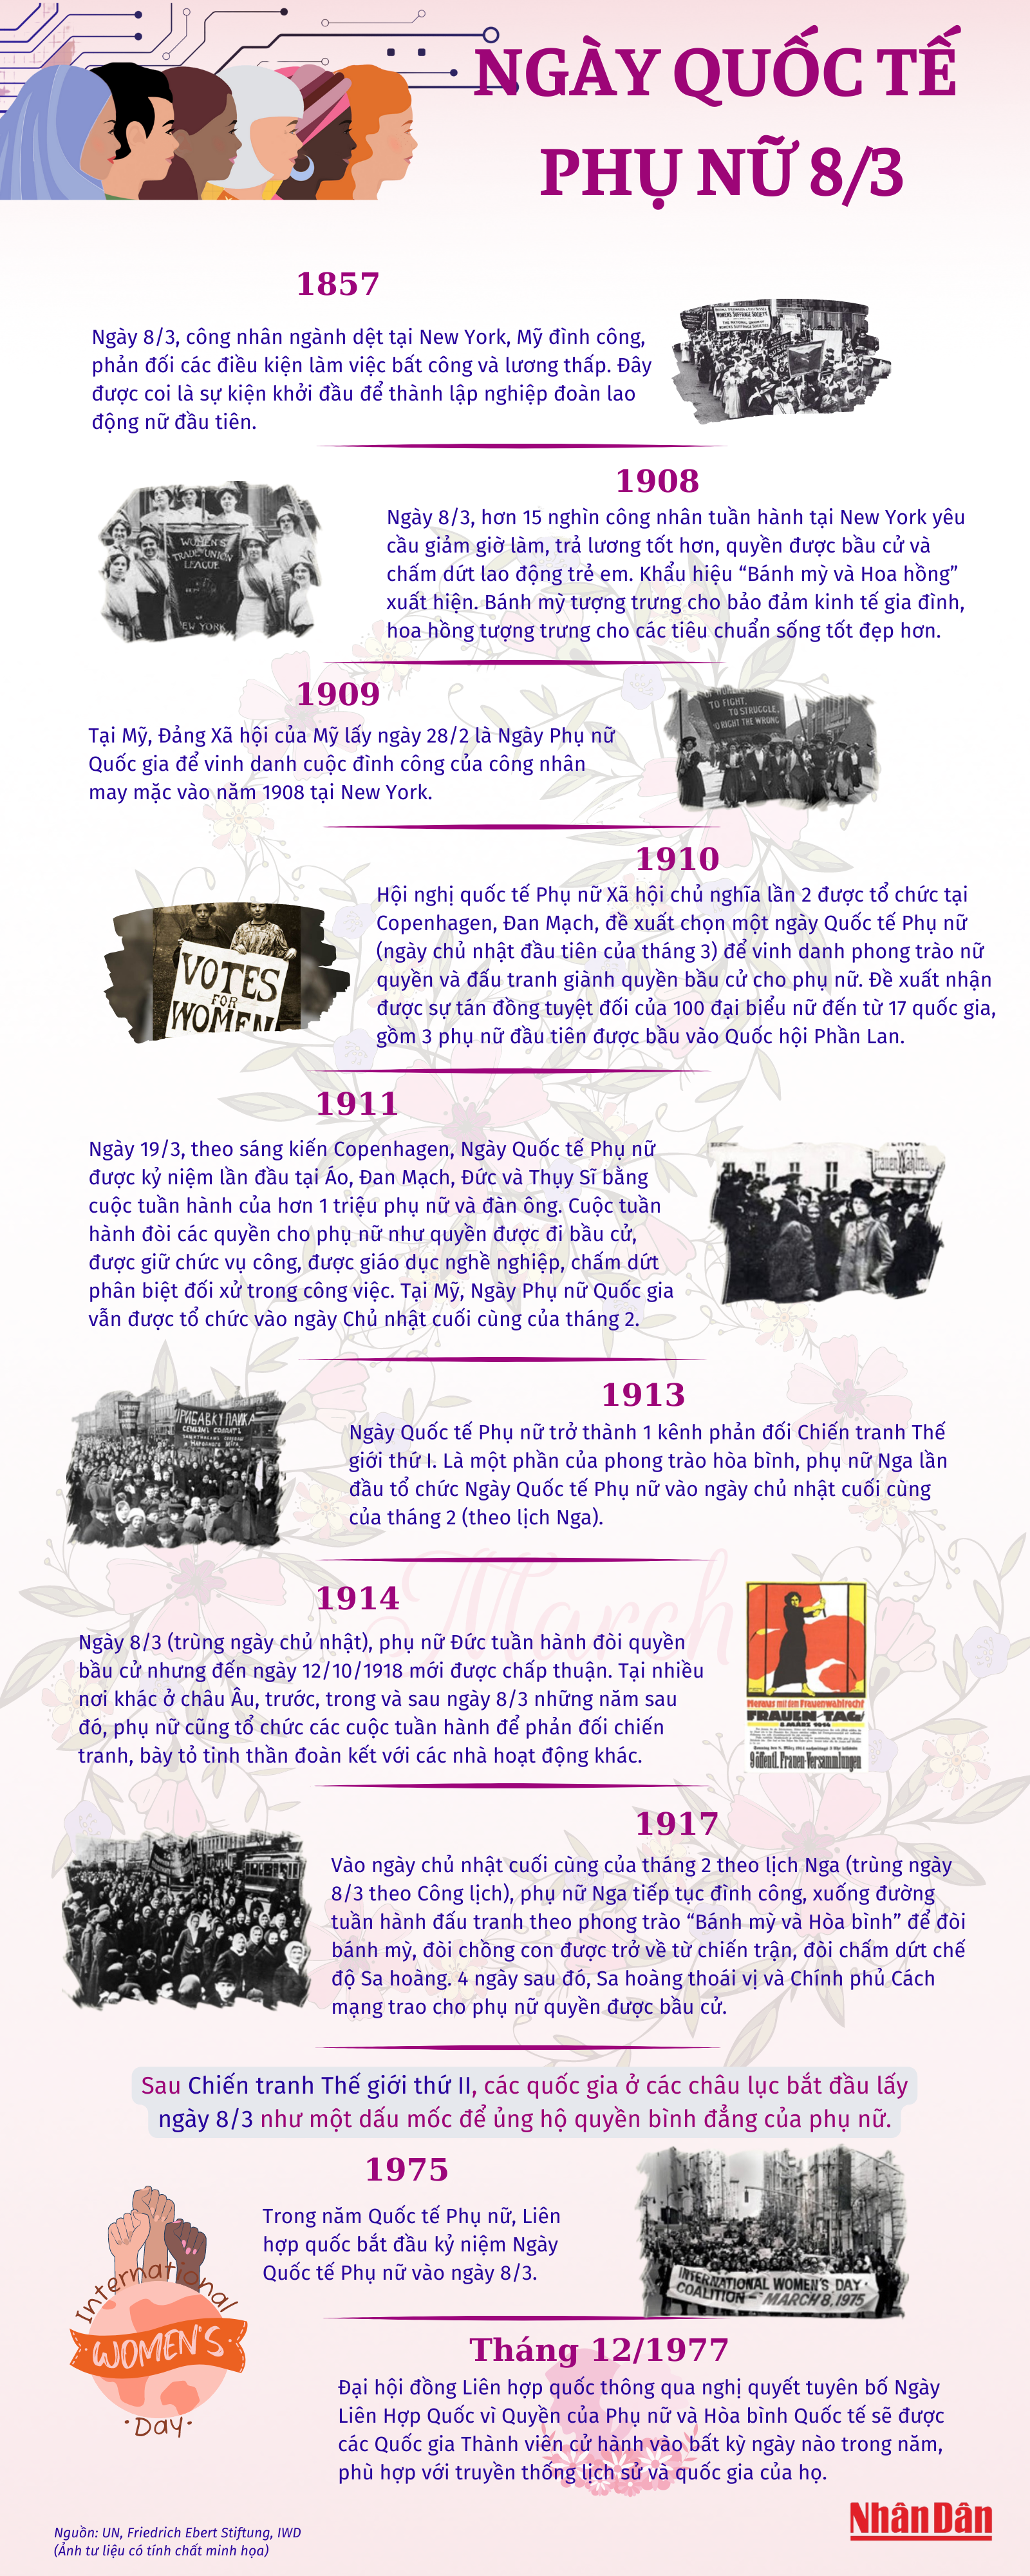 [Infographic] Ngày quốc tế phụ nữ - những dấu mốc lịch sử ảnh 1